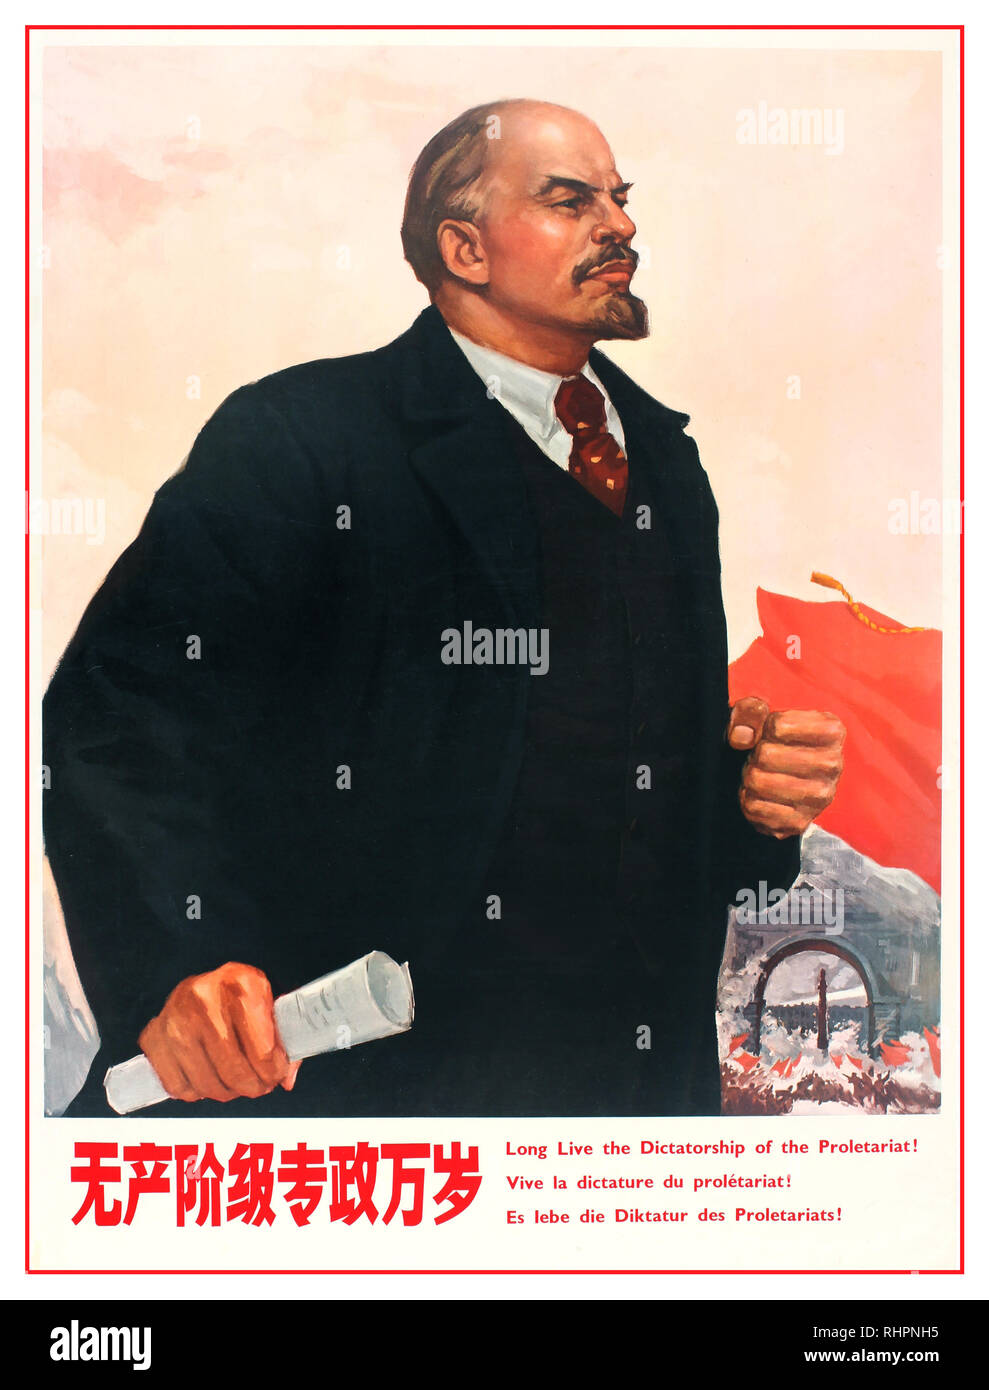 1980 affiches de propagande chinoise..par exemple - Lénine - "Longue vie à la dictature du prolétariat" ! La Chine communiste en 1986. Banque D'Images